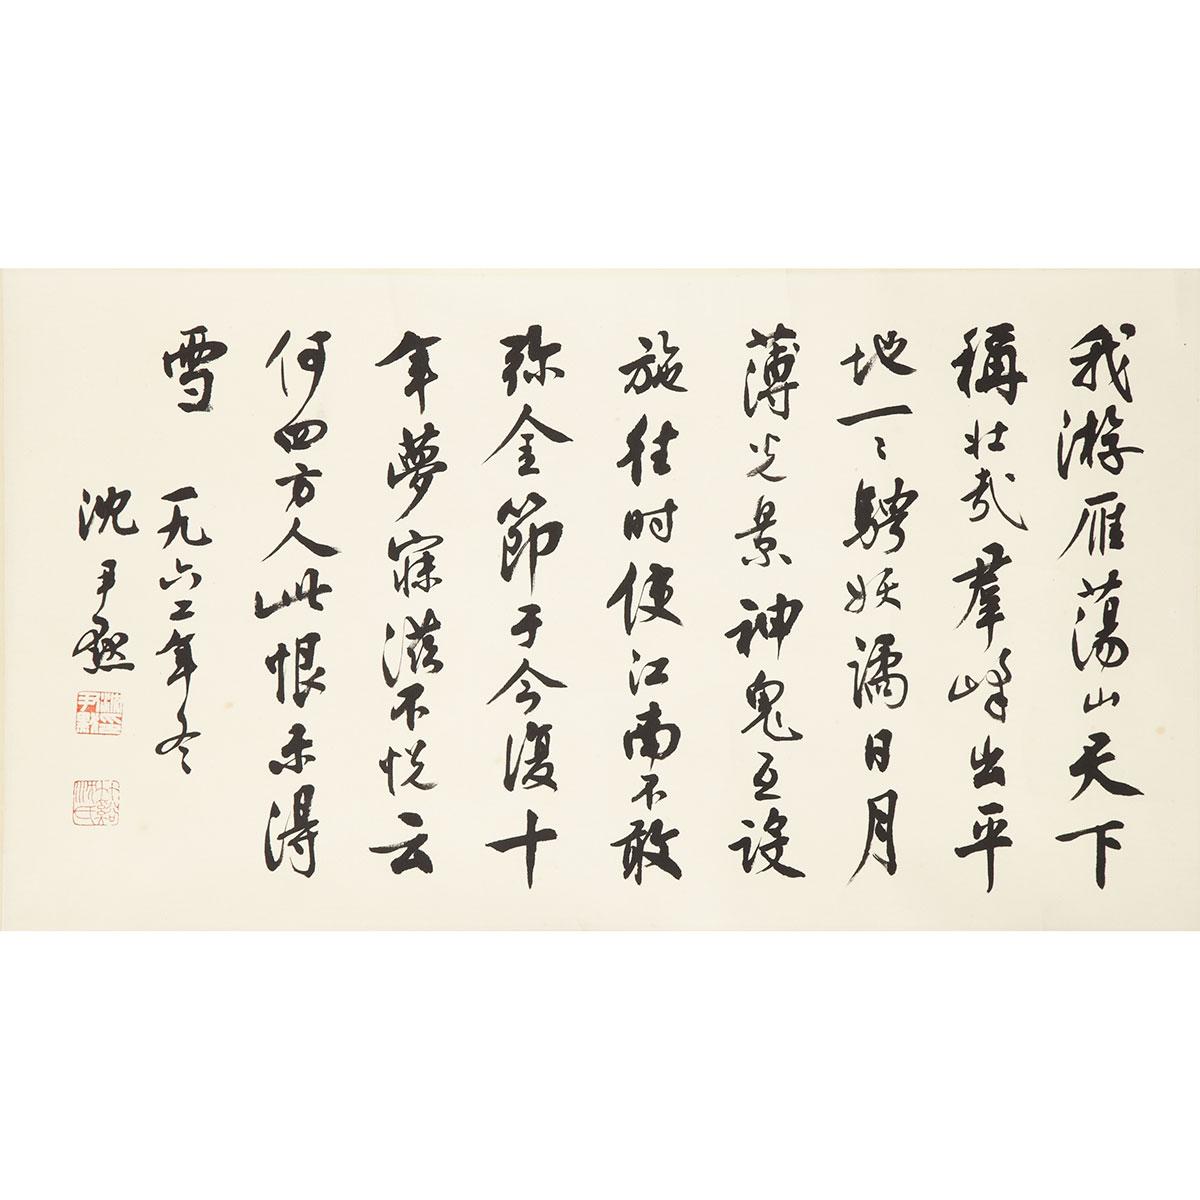 Shen Yinmo (1883-1971)